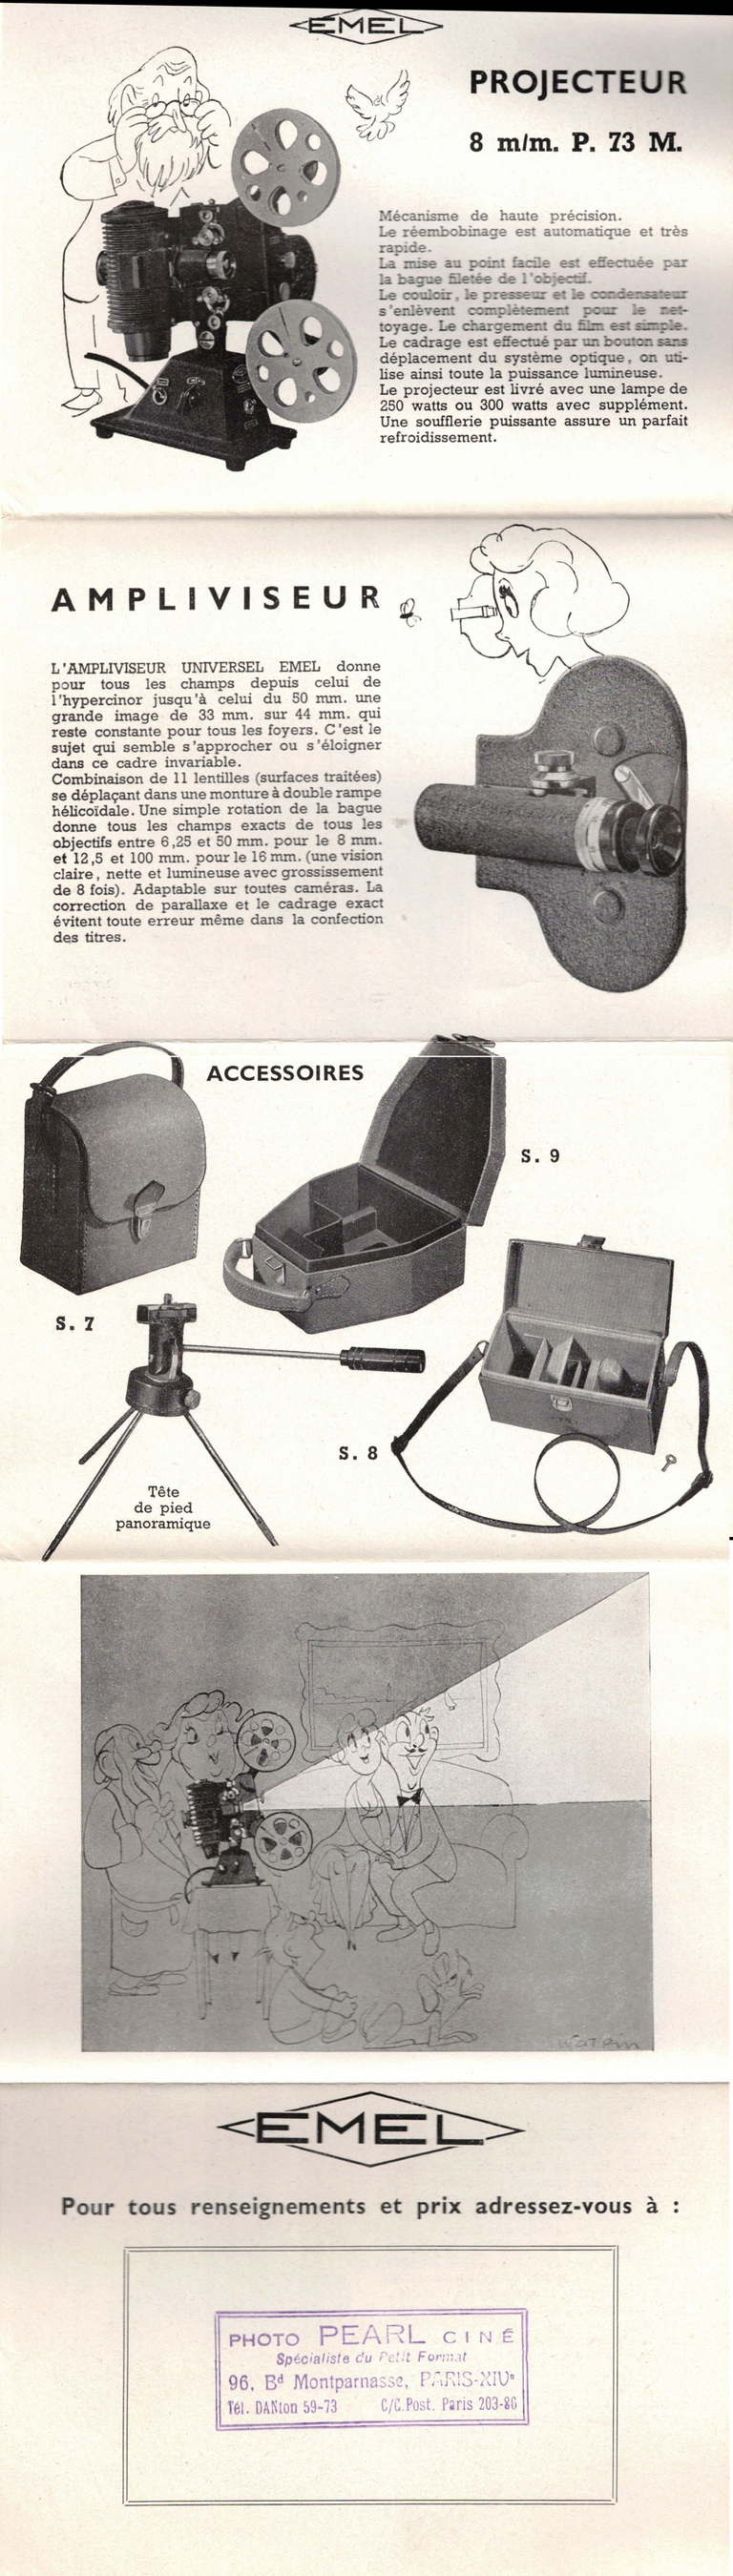 Emel - Projecteur 8 mm P.73 - Ampliviseur - 1950 - verso